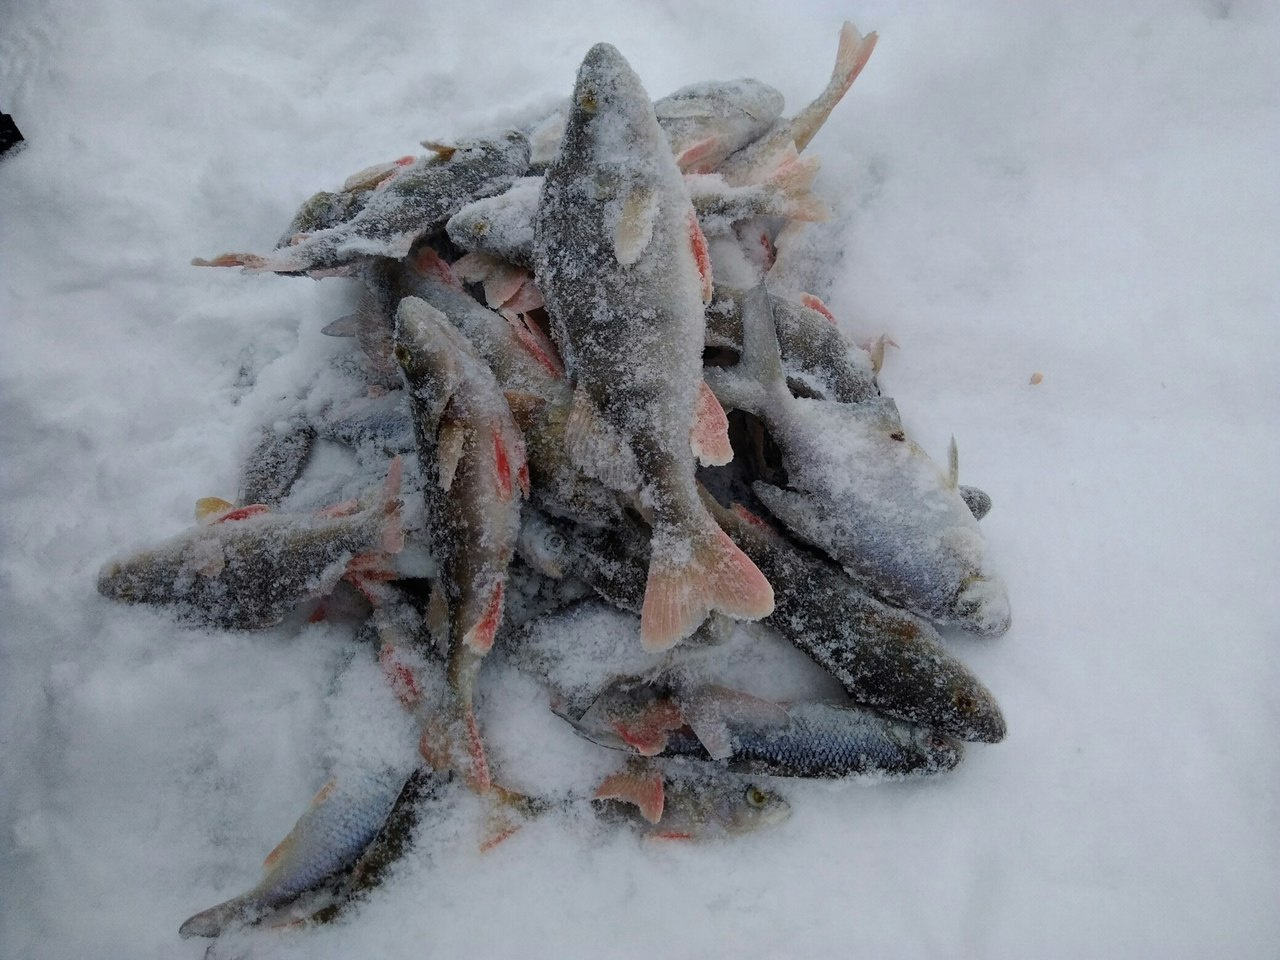 Места для рыбалки в самарской области – платная и бесплатная рыбалка!